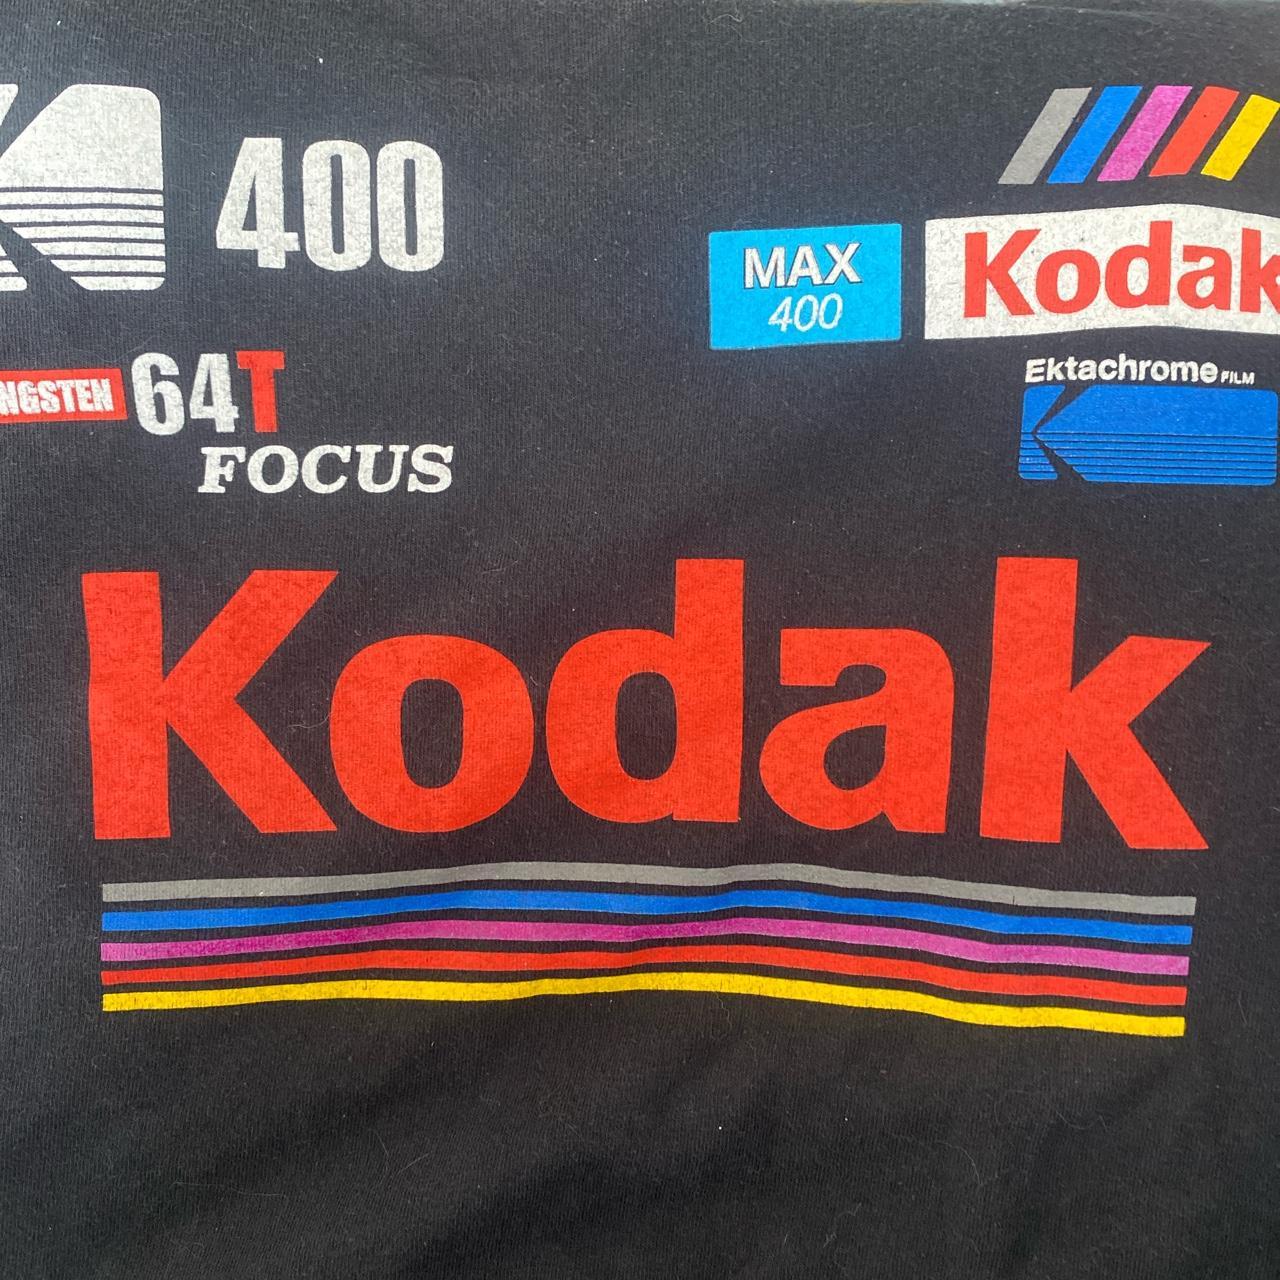 Kodak Men's Red and Black T-shirt (2)